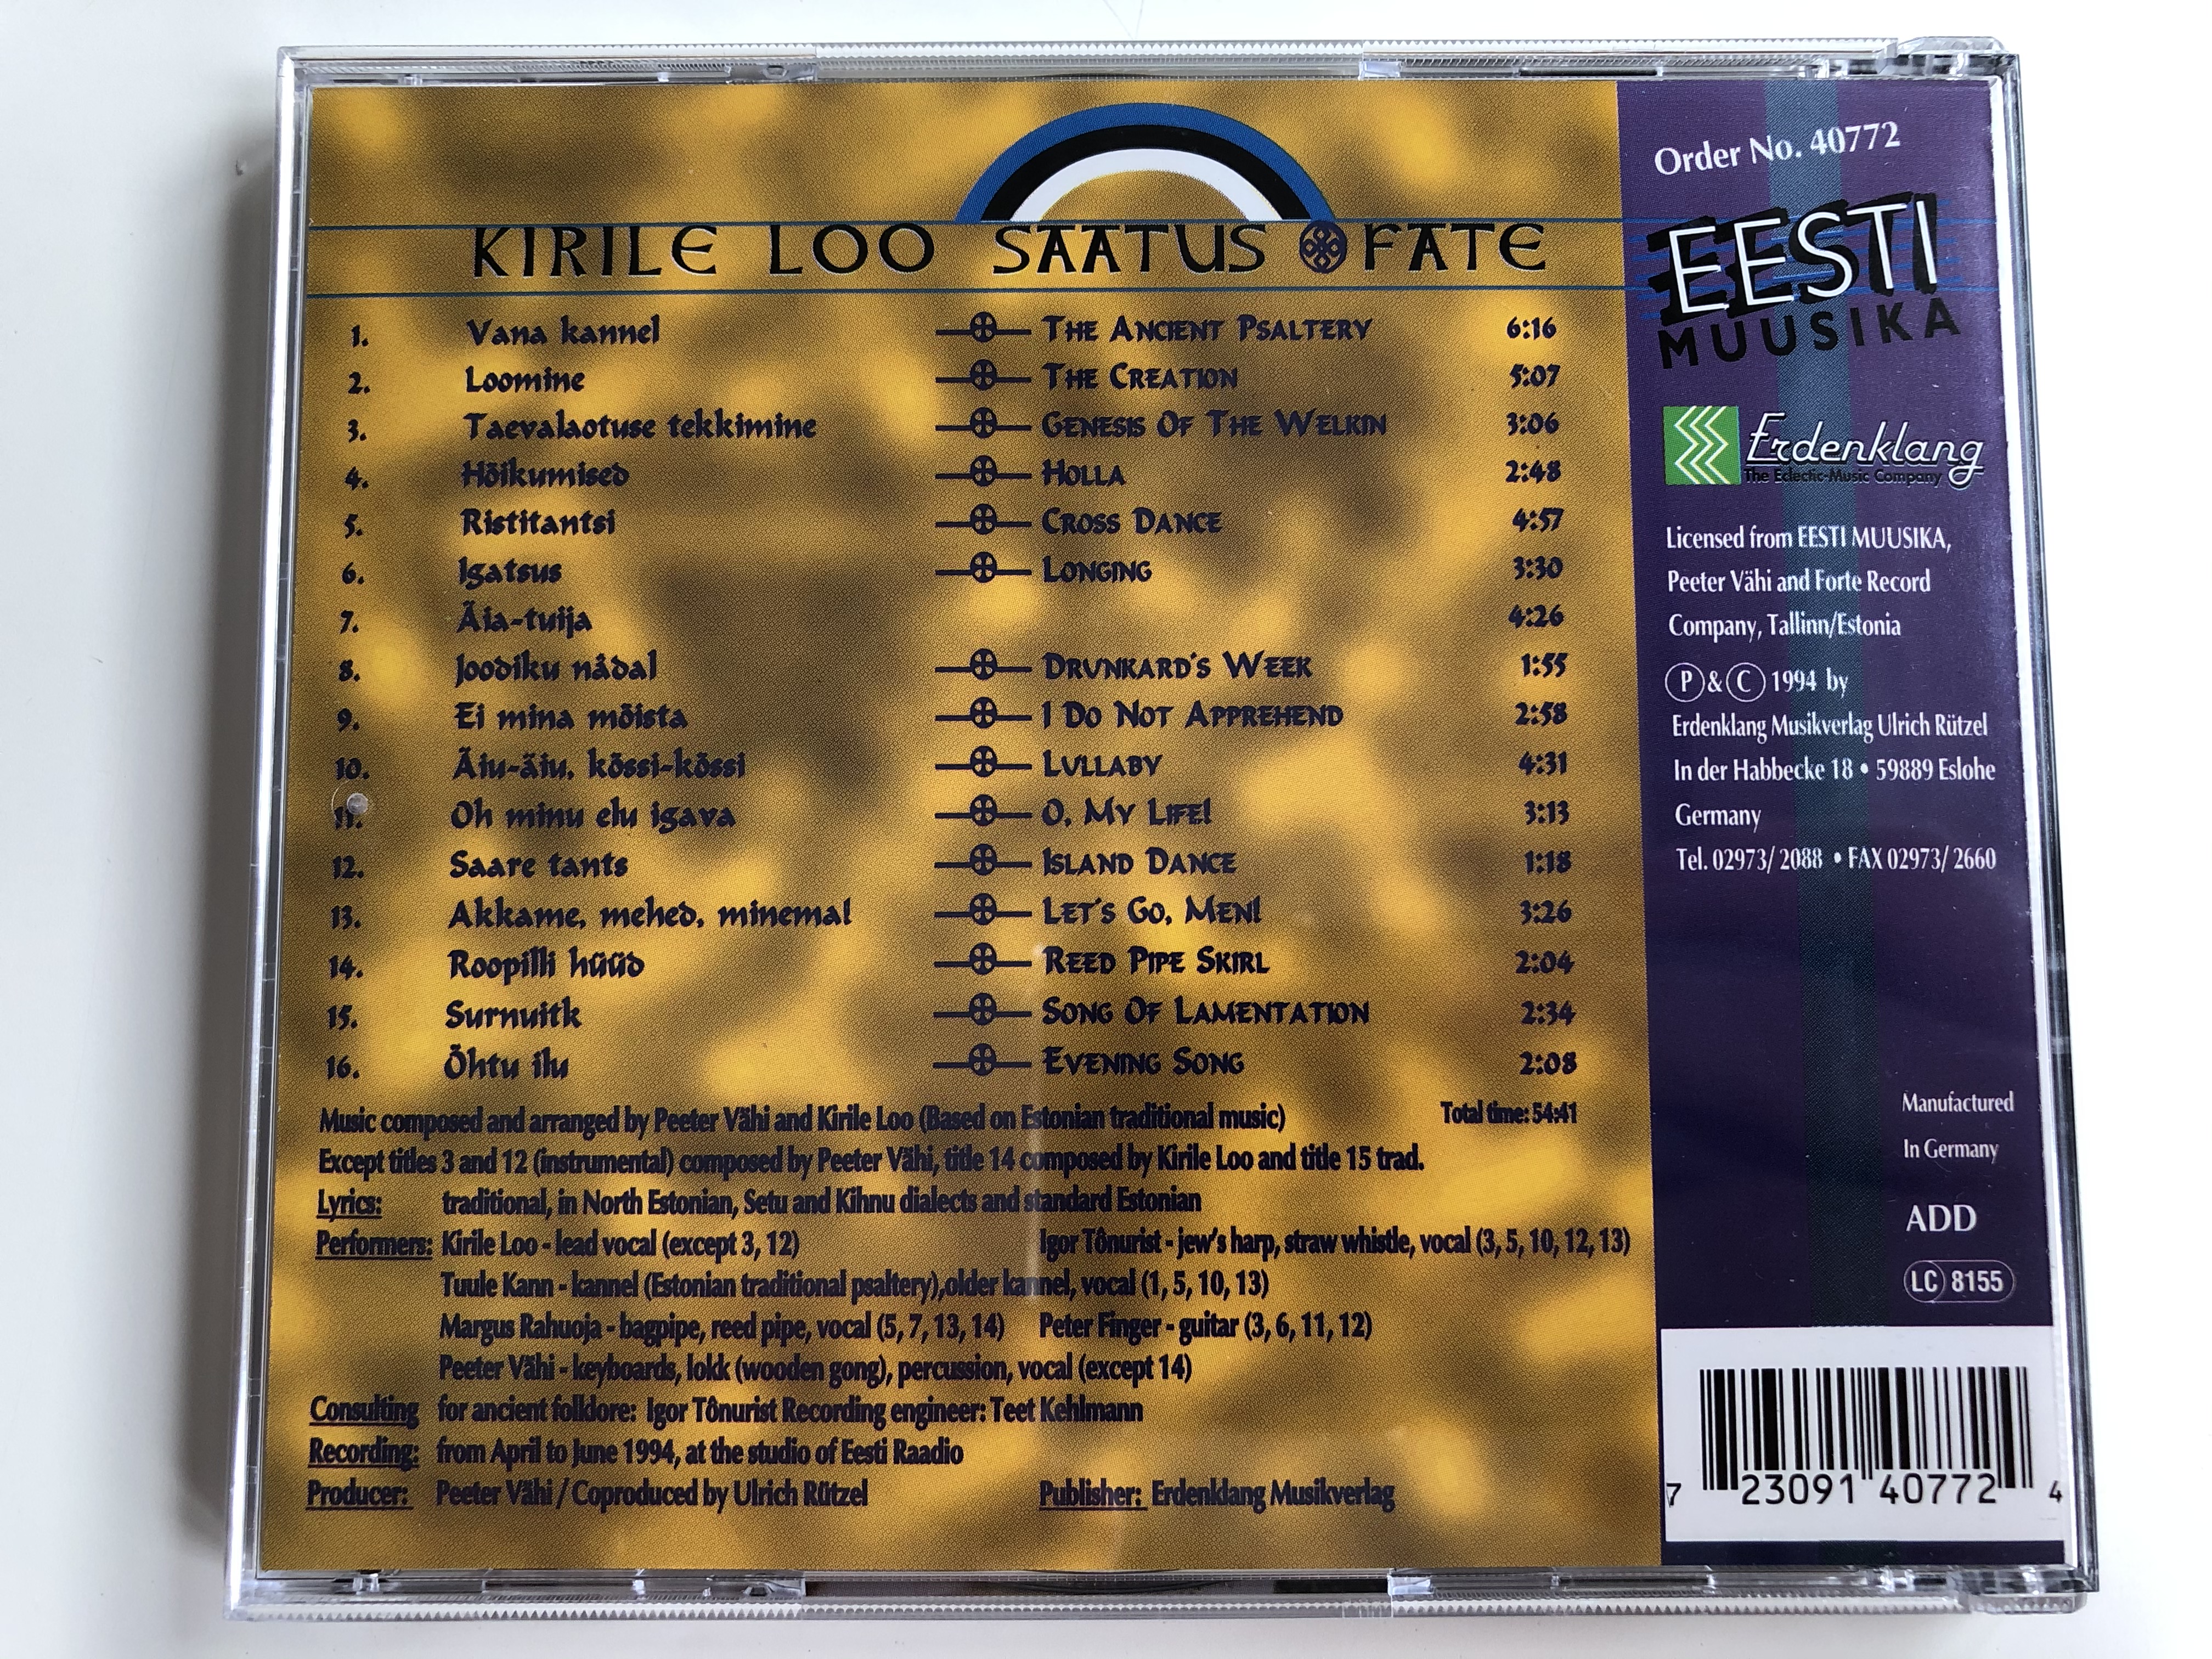 kirile-loo-saatus-fate-erdenklang-audio-cd-1994-stereo-40772-4-.jpg